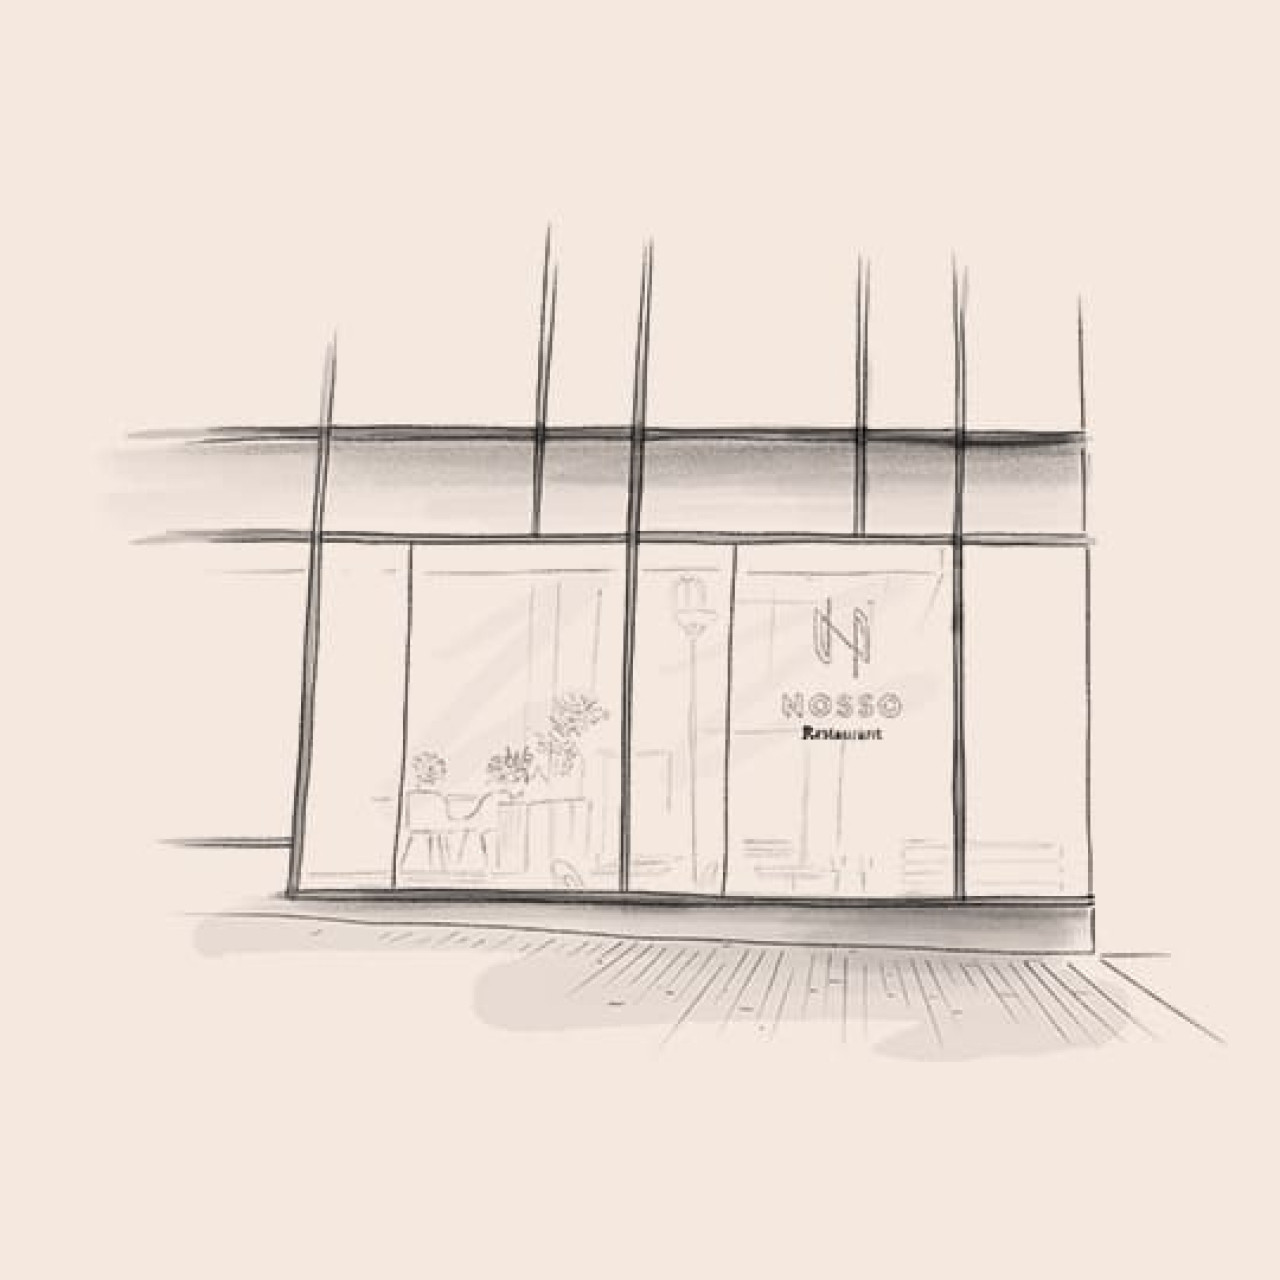 Illustration des Restaurants Le Nosso in Paris Frankreich